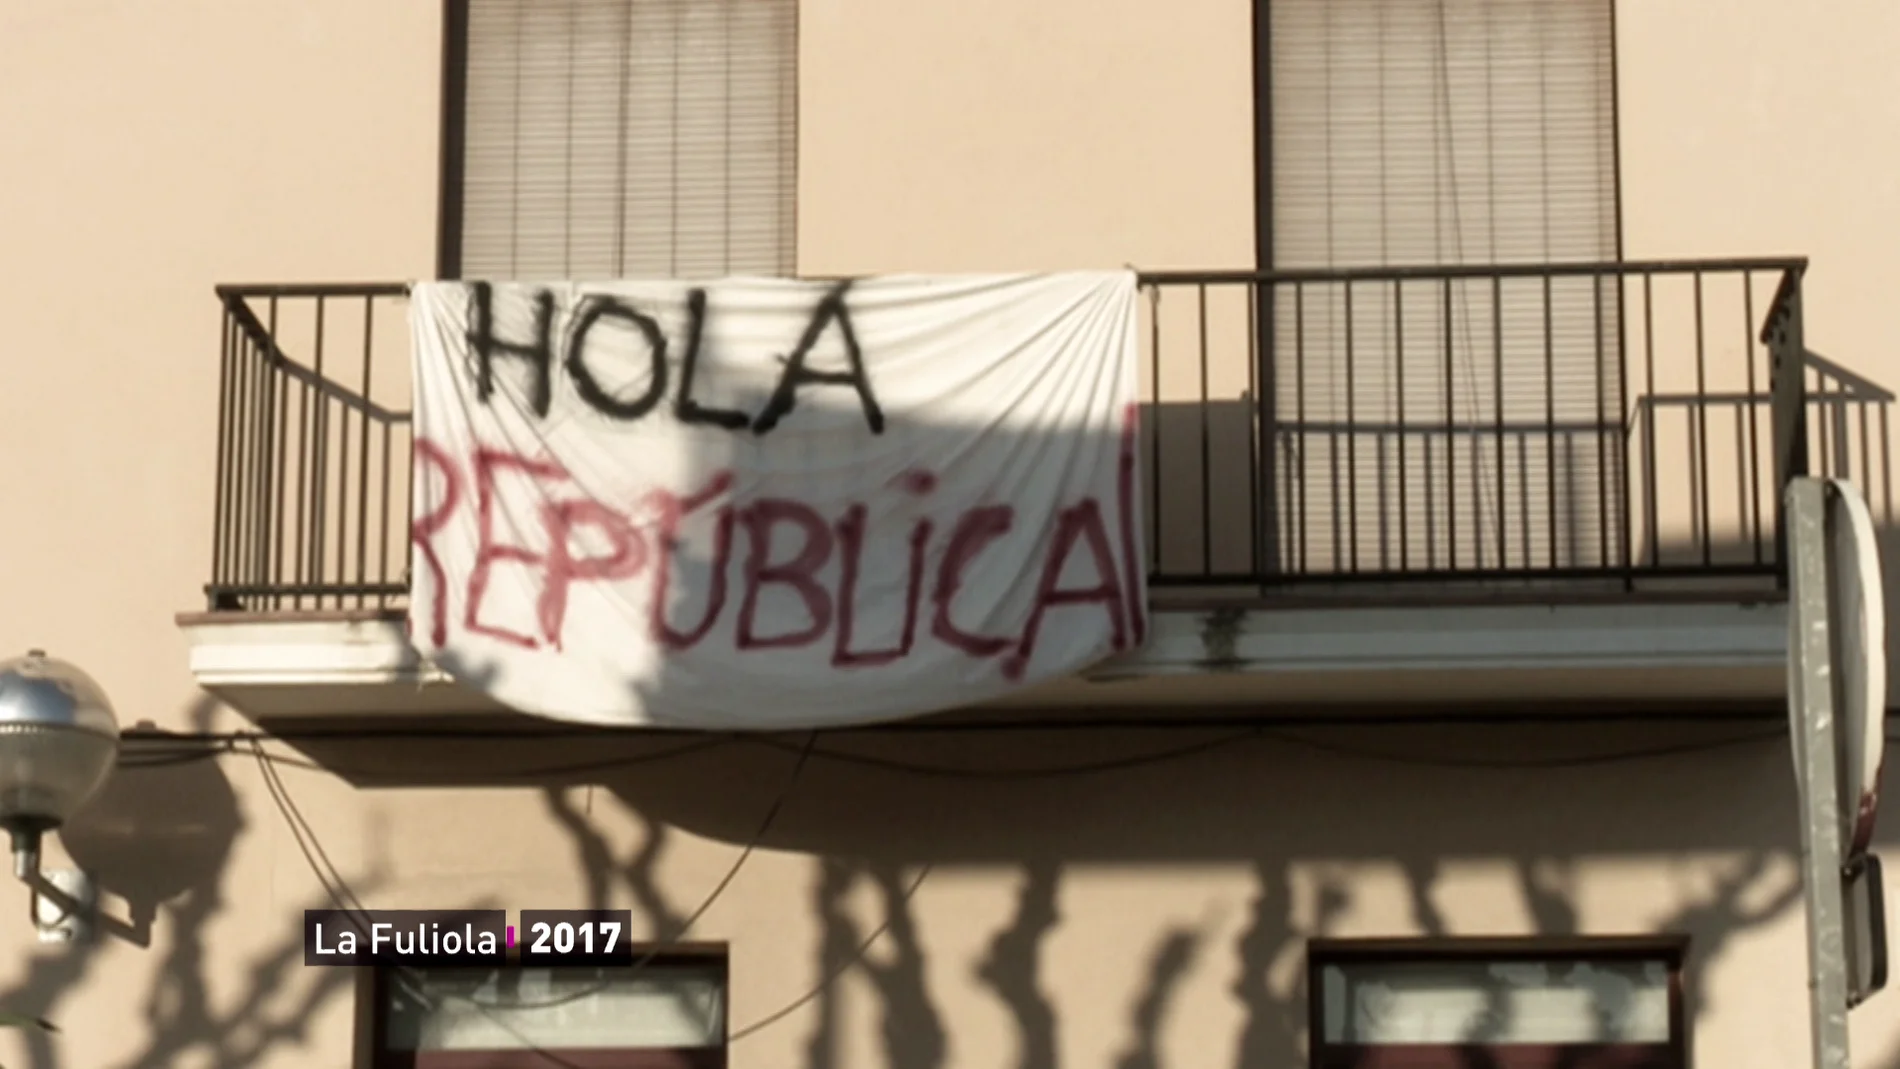 La Fuliola, el pueblo catalán